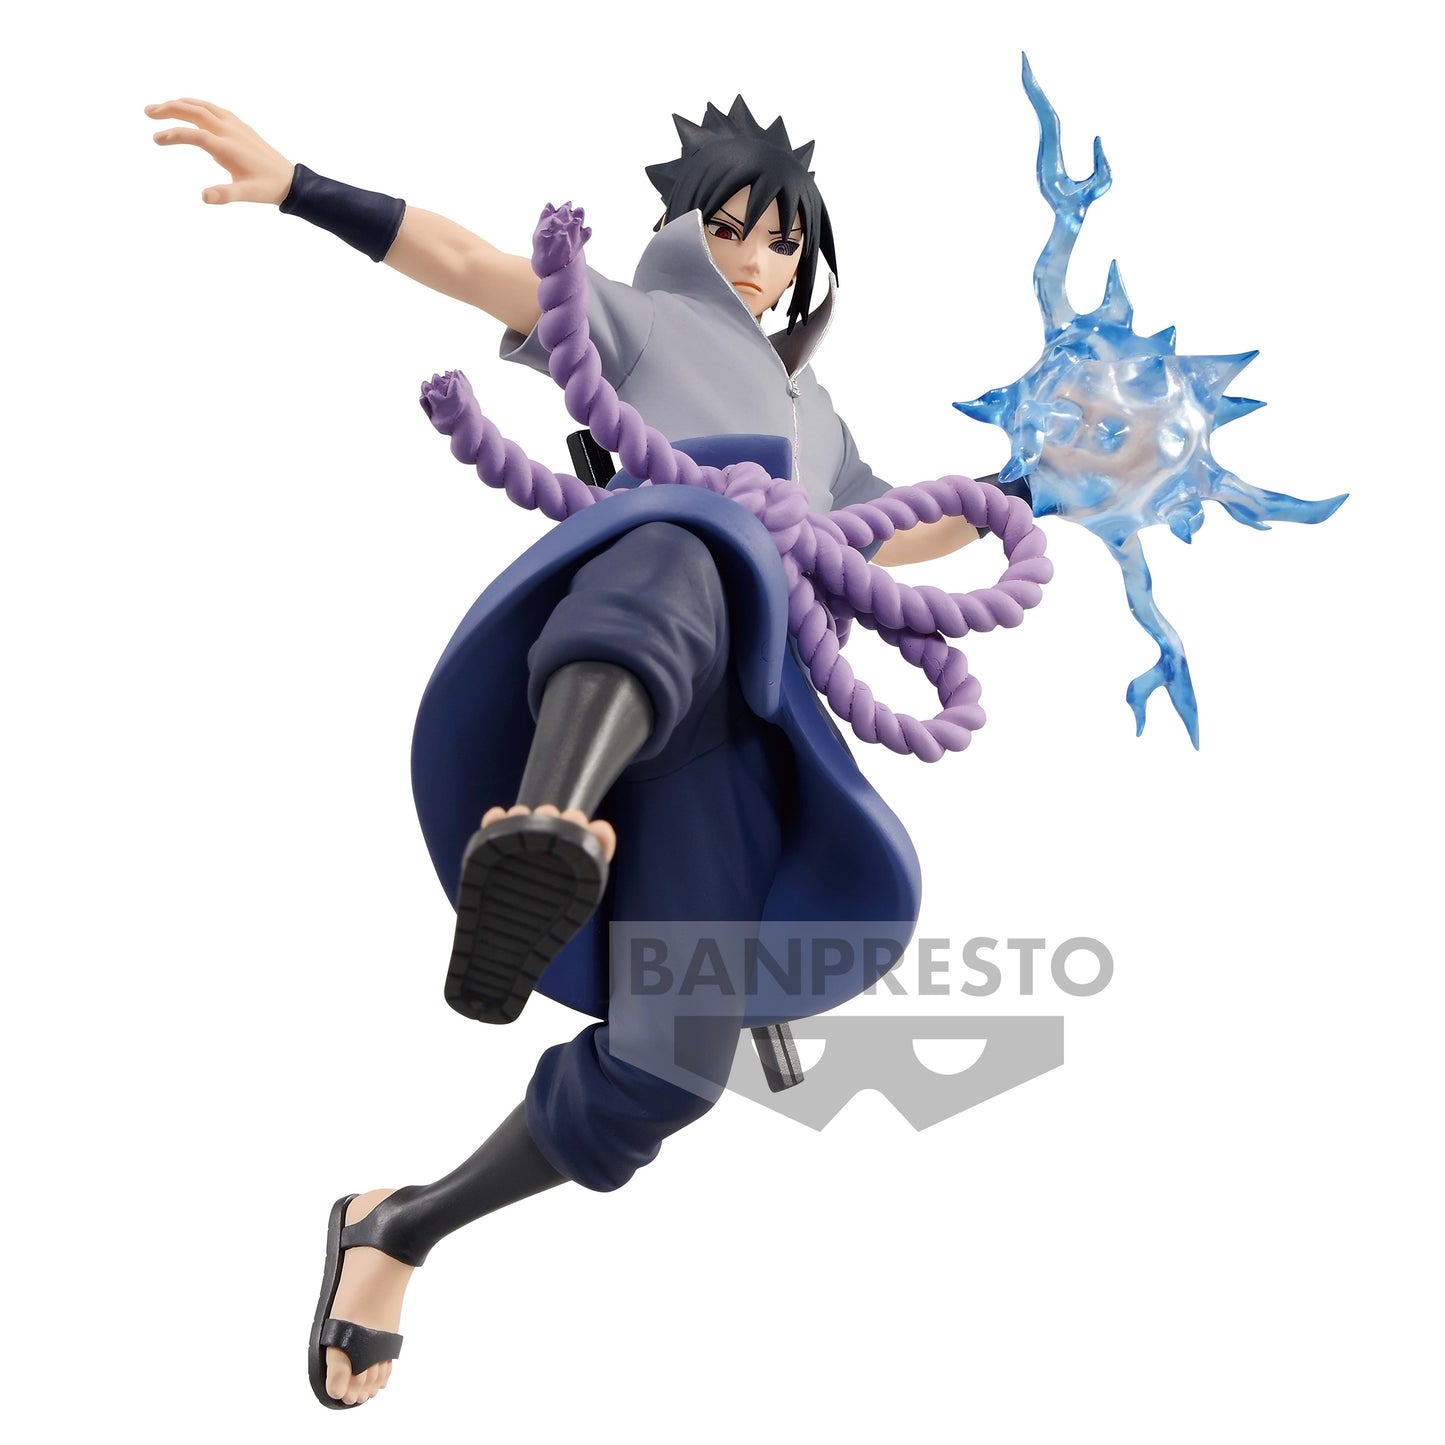 BANPRESTO Naruto: Shippuden Sasuke Uchiha Figure